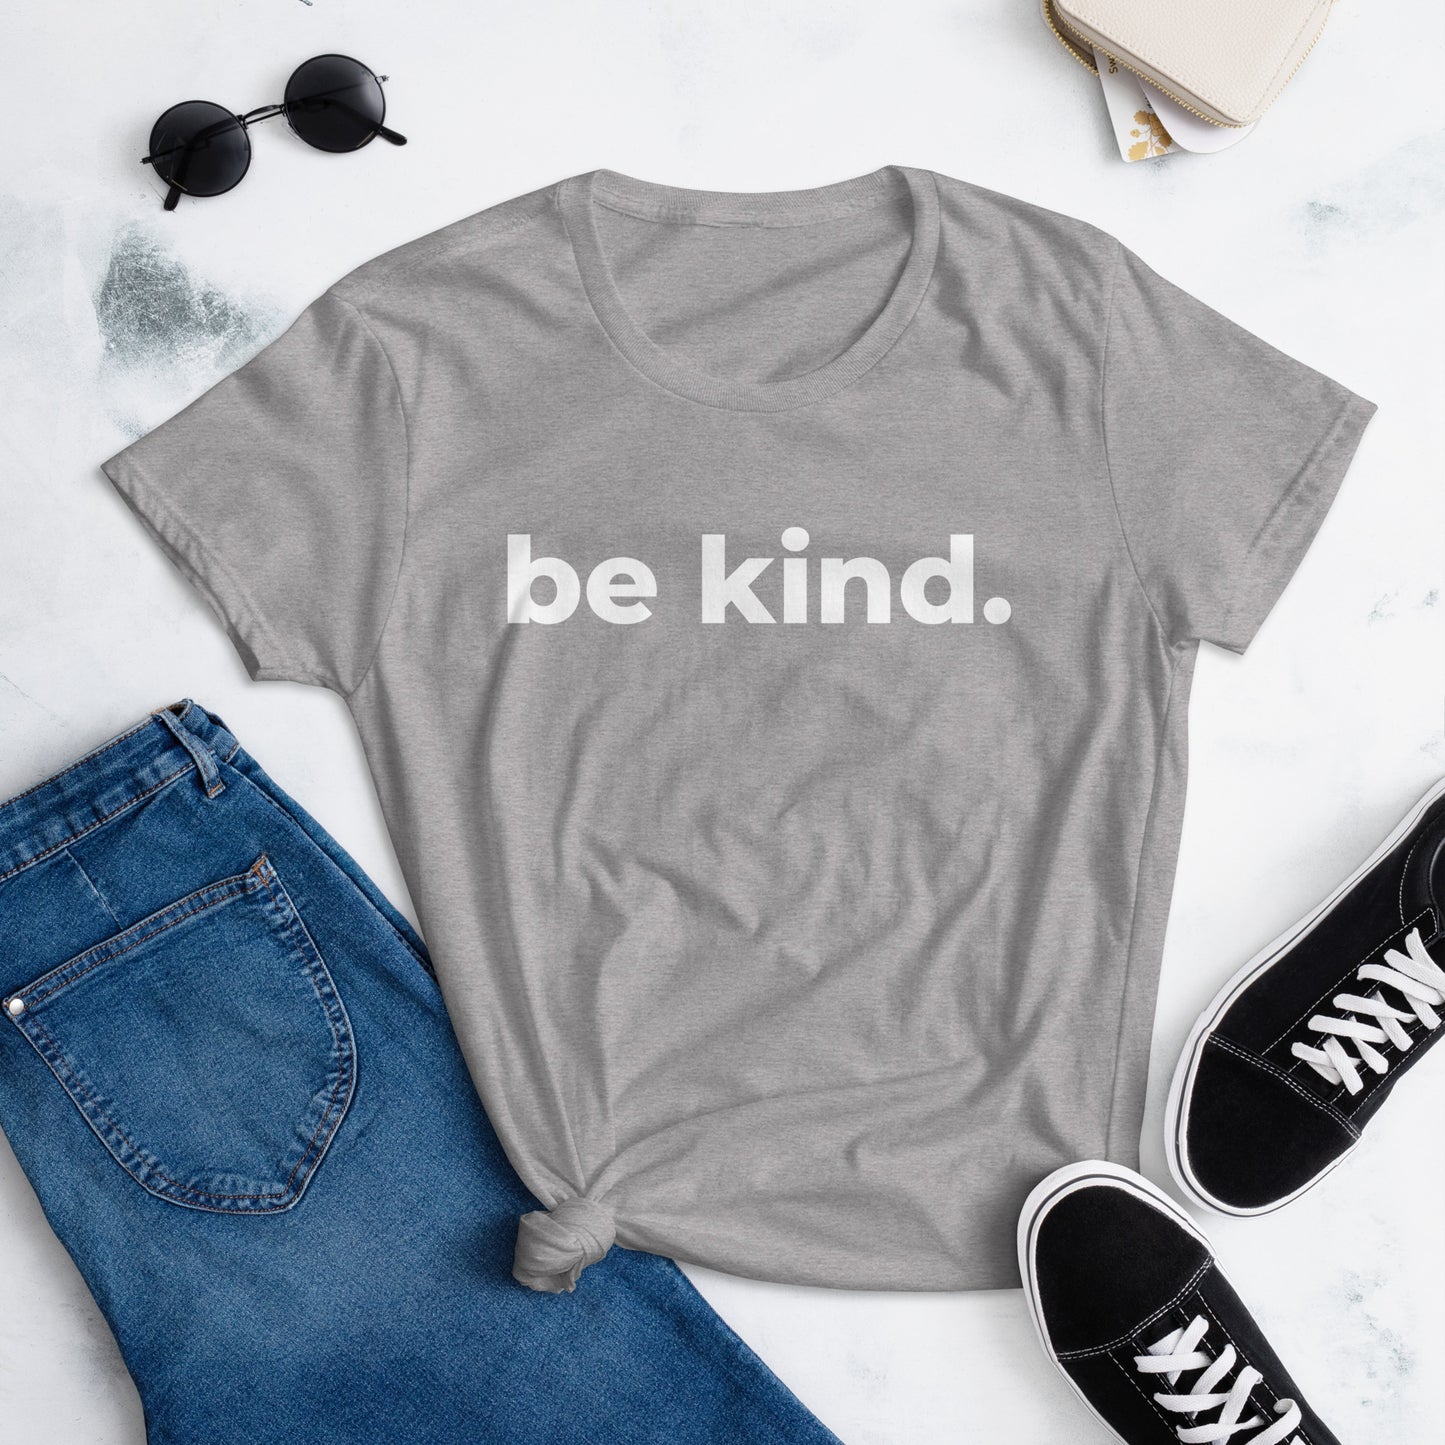 Be Kind - Women's short sleeve t-shirt